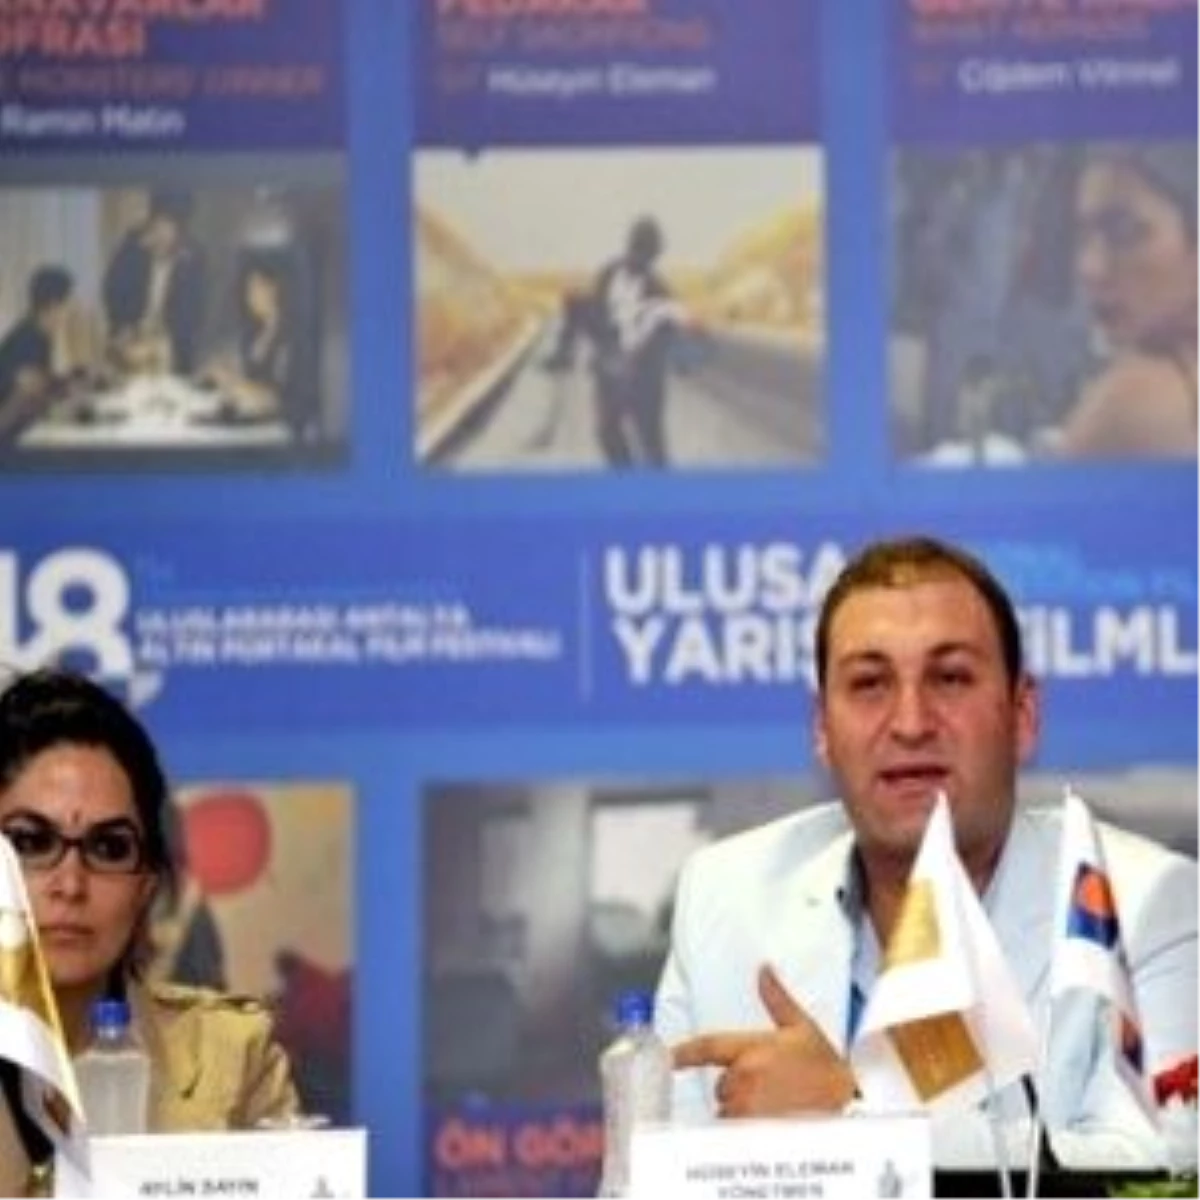 "48. Uluslararası Antalya Altın Portakal Film Festivali"